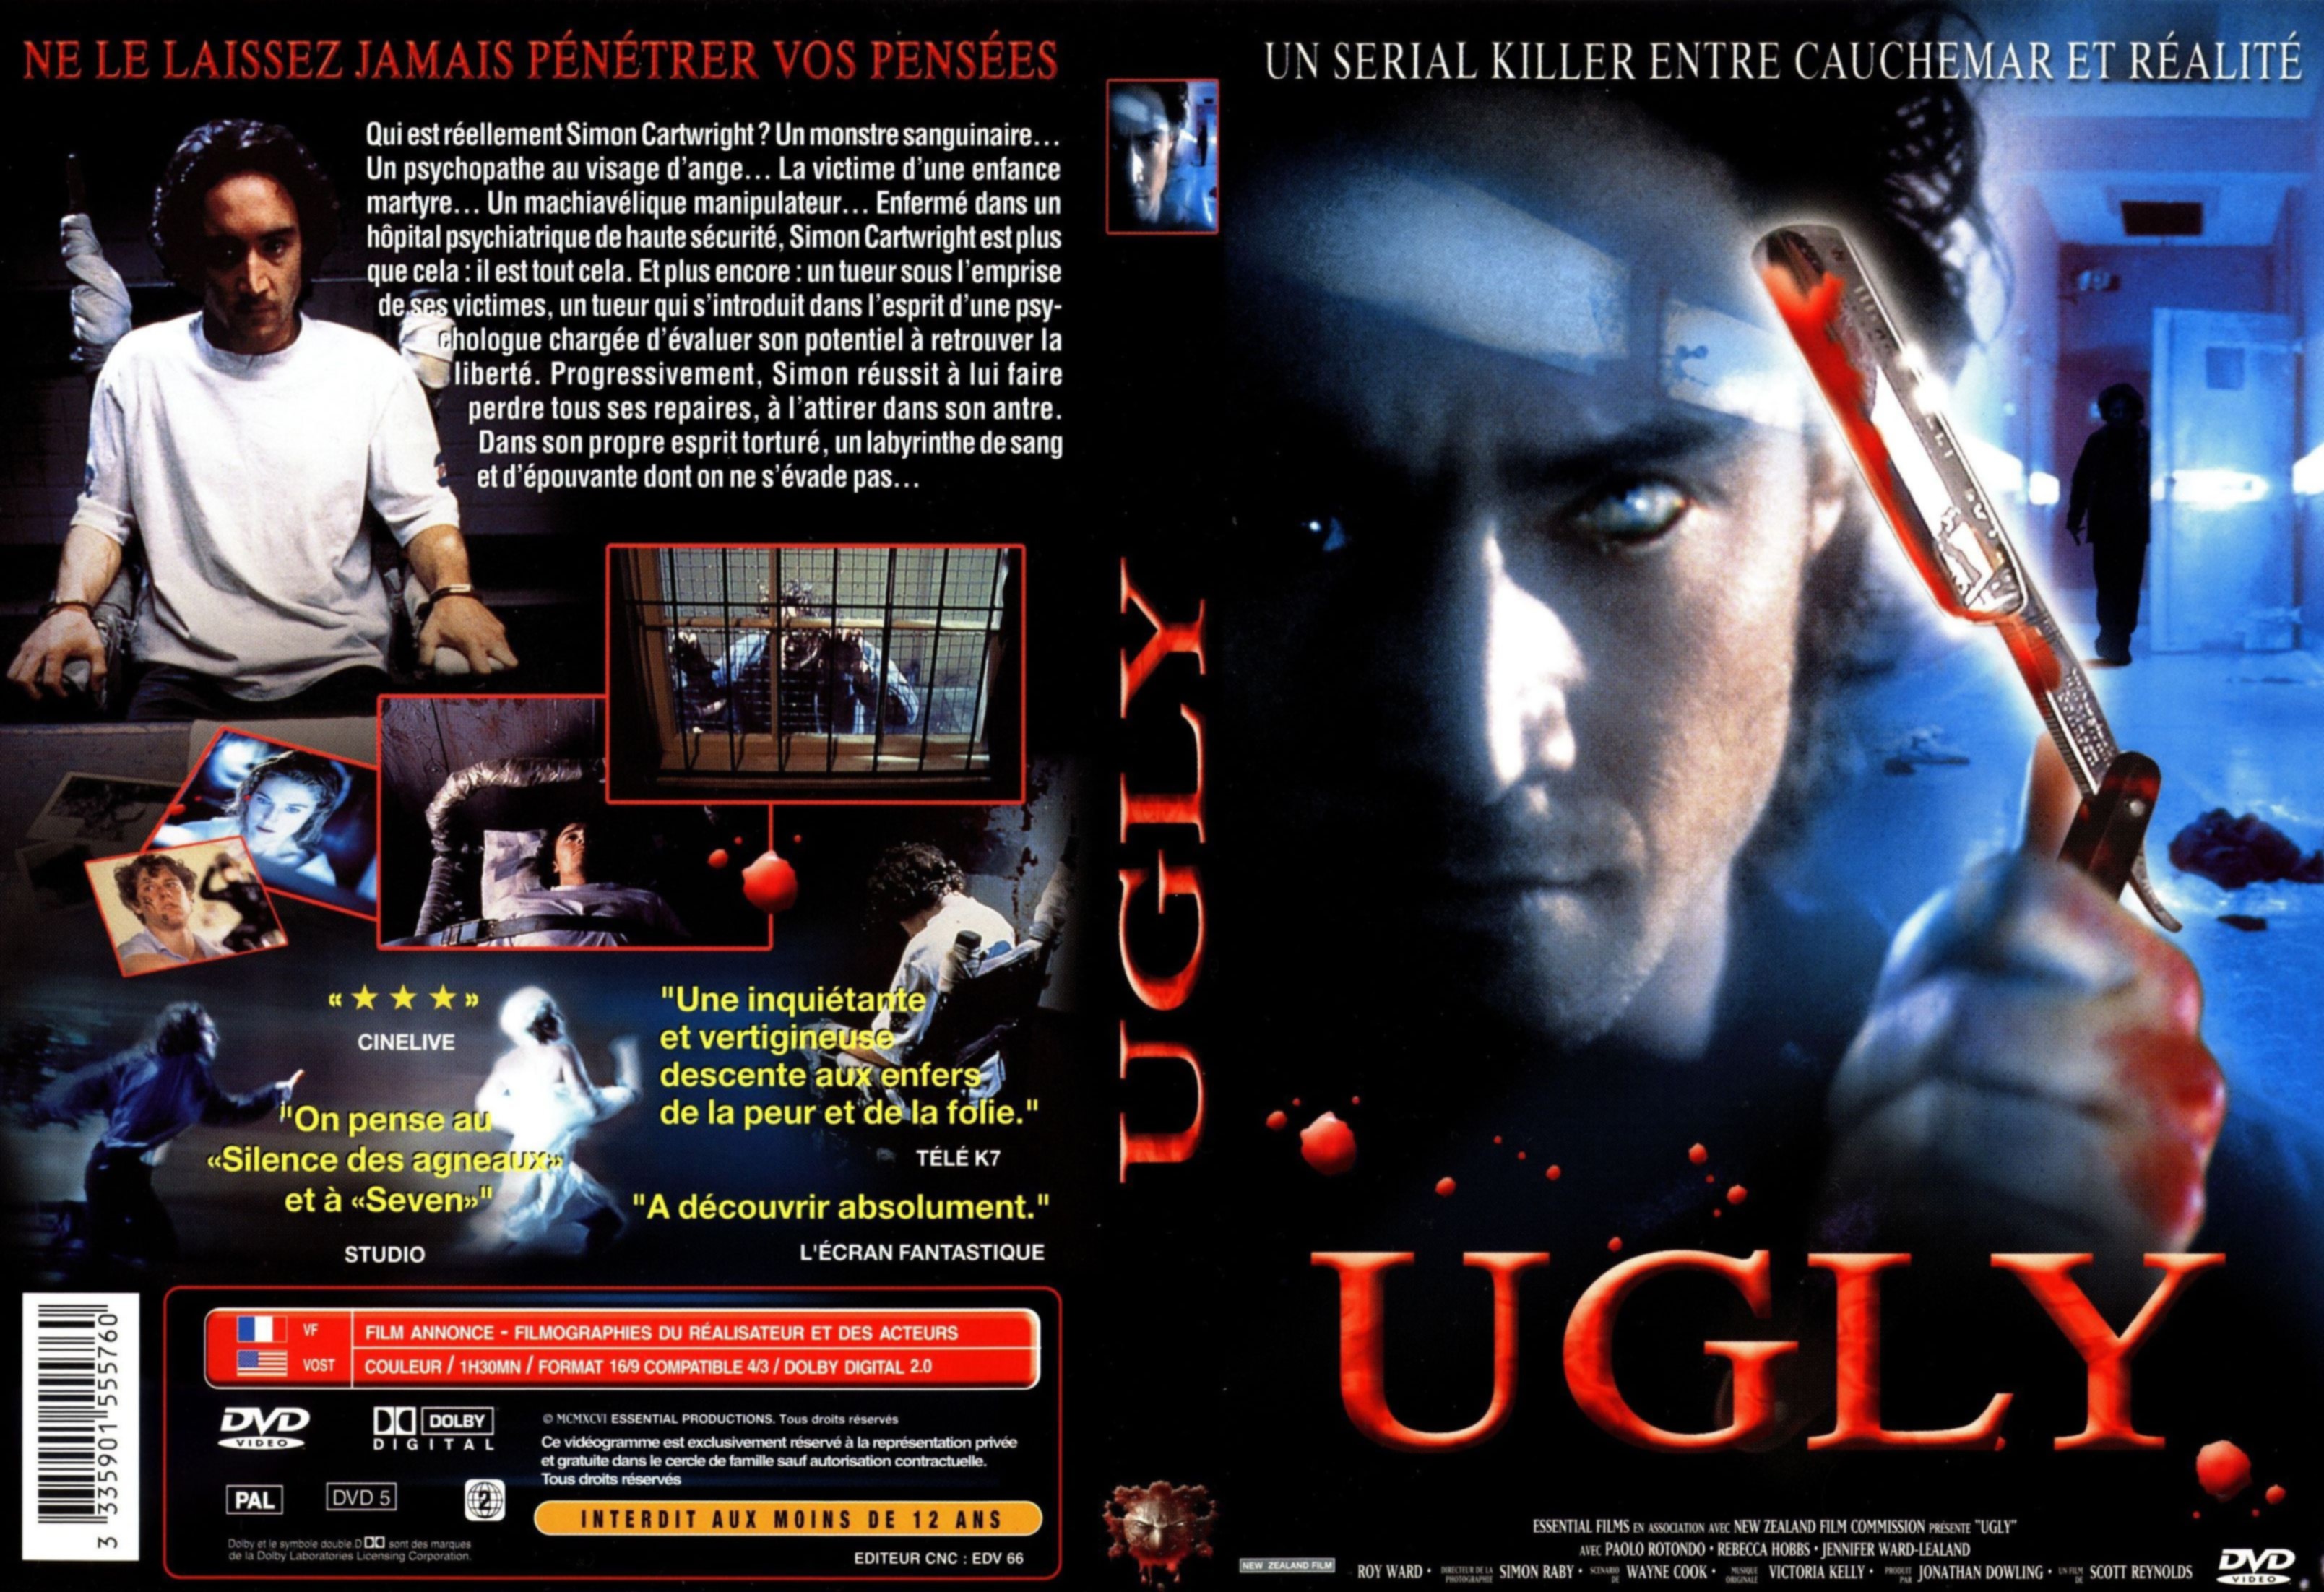 Jaquette DVD Ugly v2